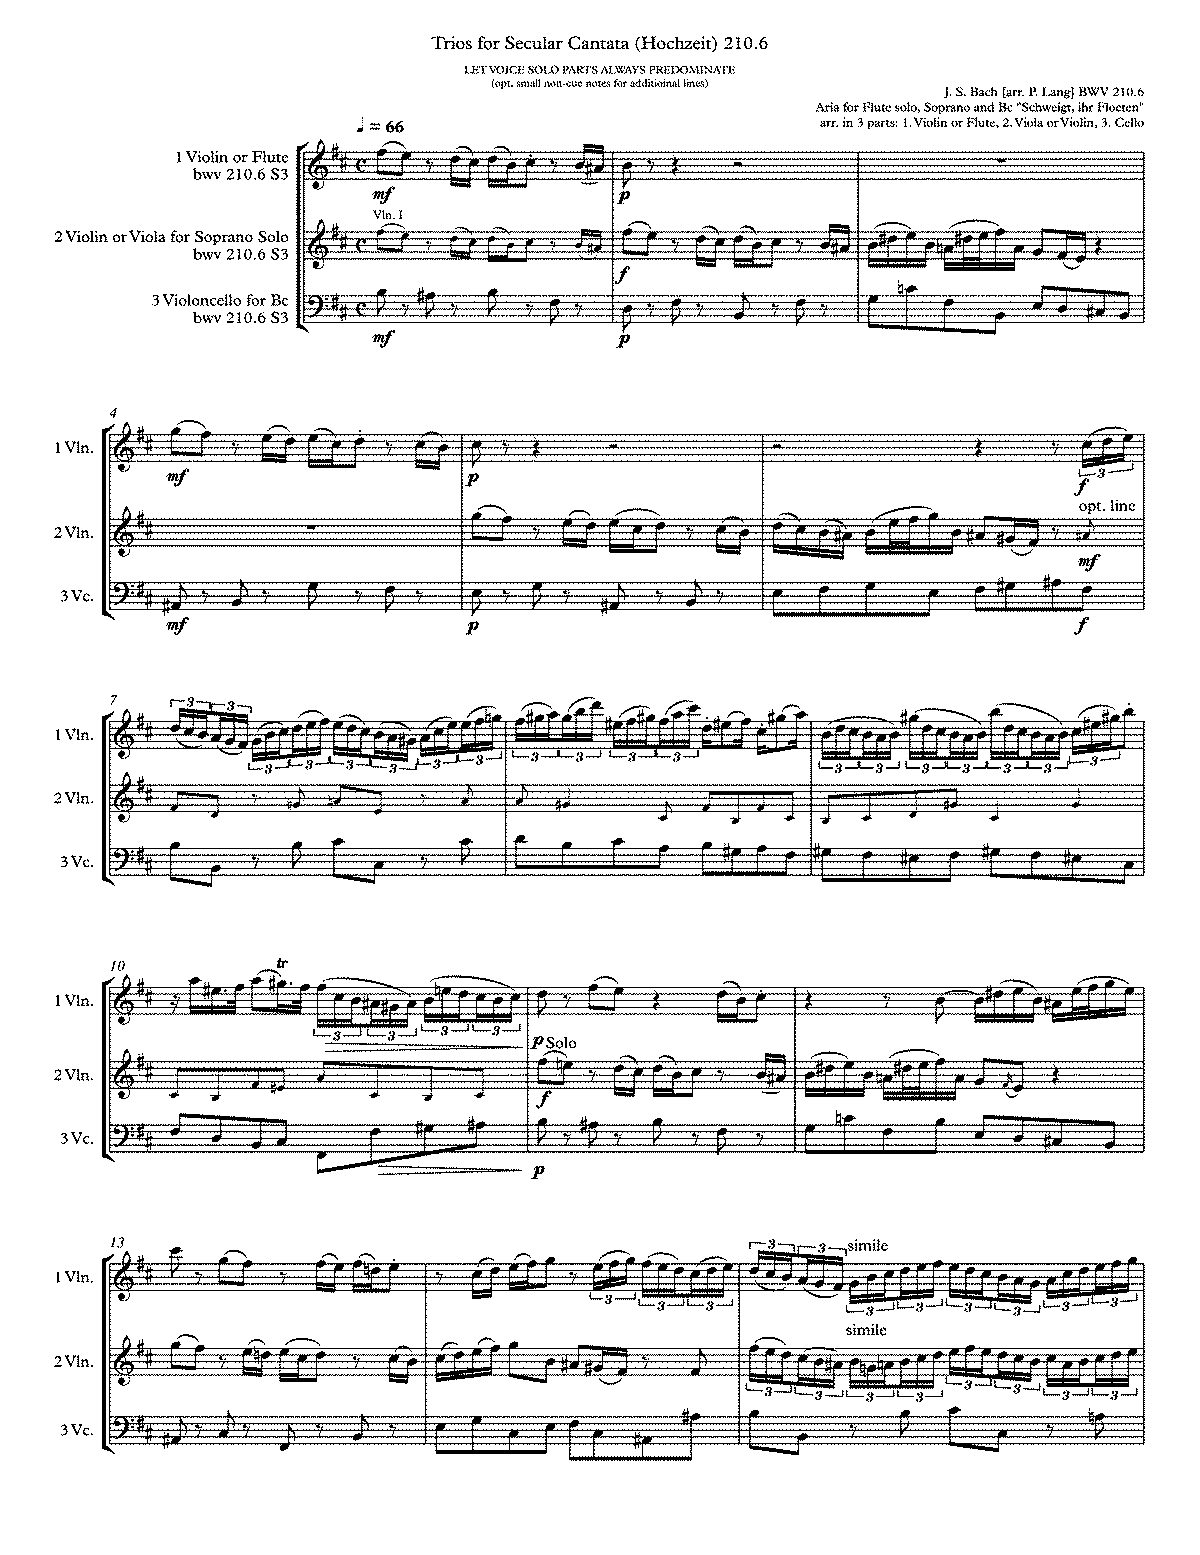 O holder Tag, erwünschte Zeit, BWV 210 (Bach, Johann Sebastian) - IMSLP